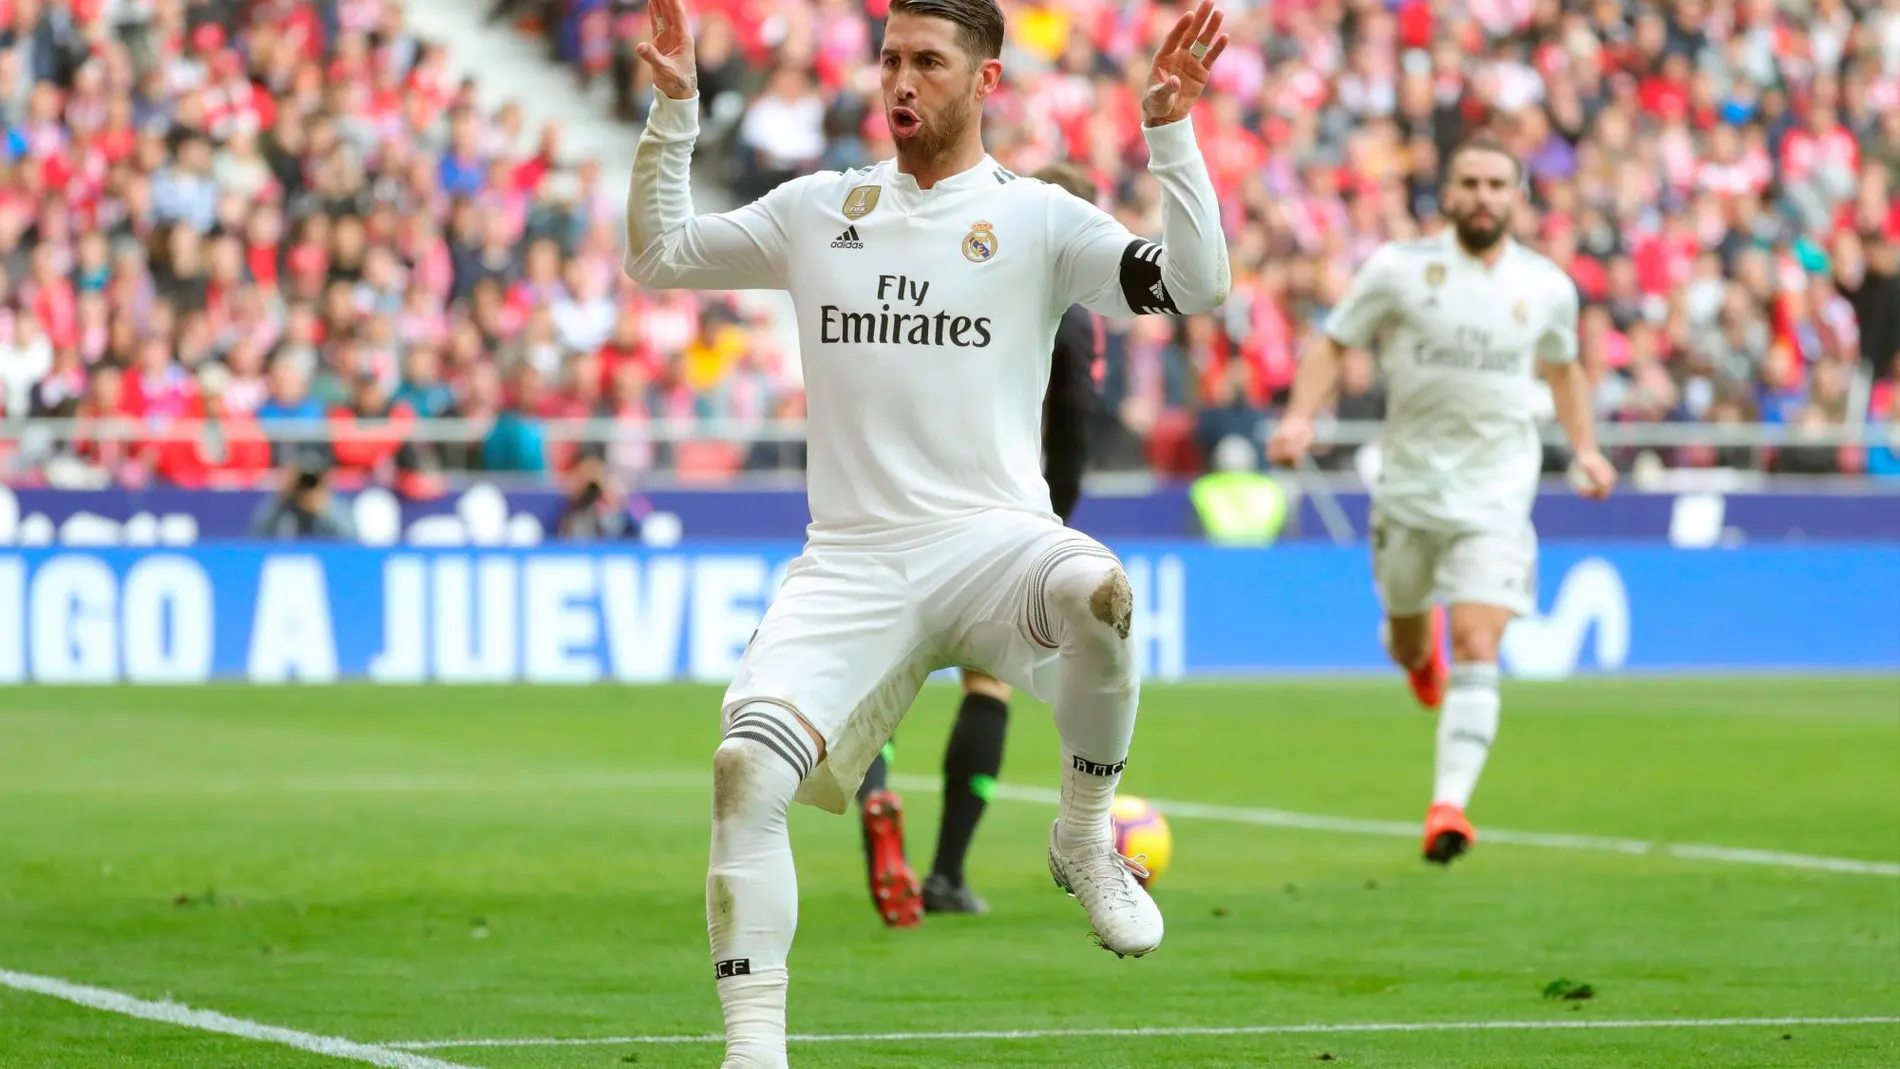 El defensa del Real Madrid Sergio Ramos celebra su gol ante el Atlético de Madrid